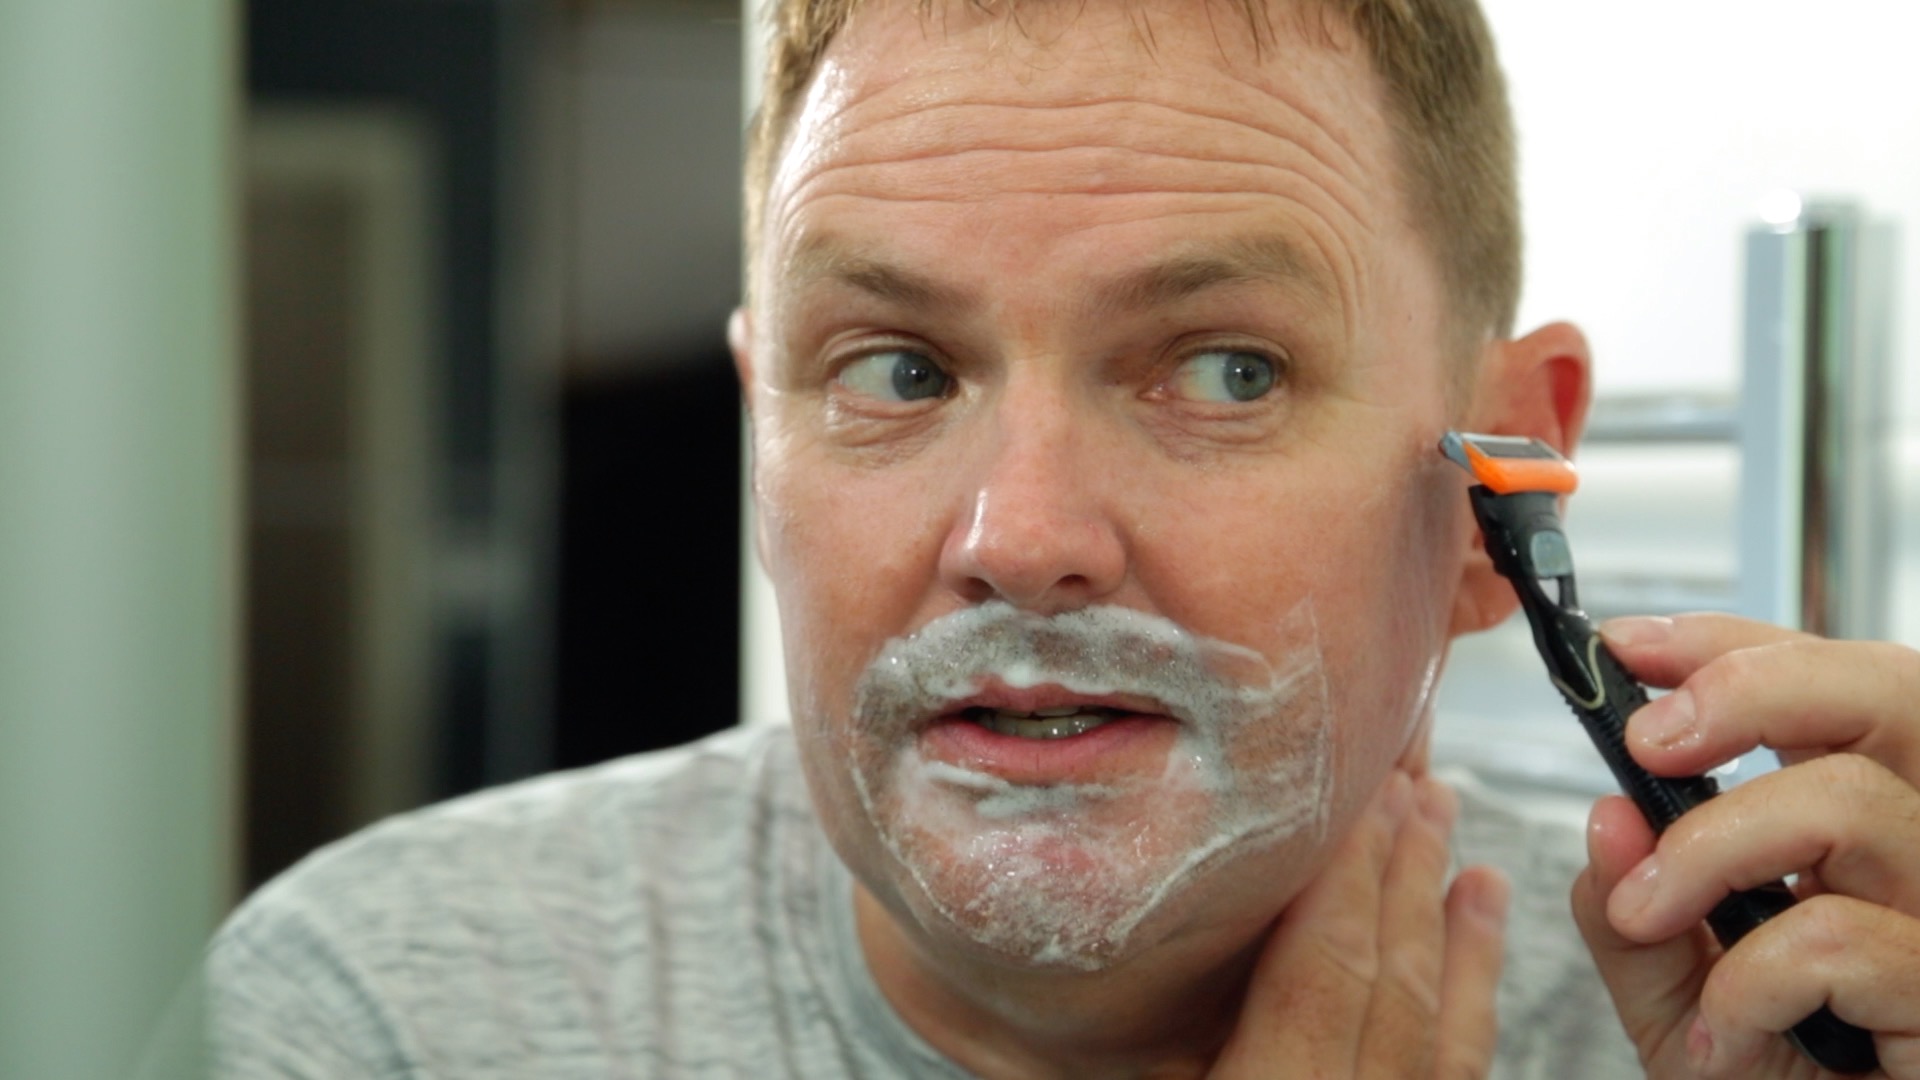 A man shaving